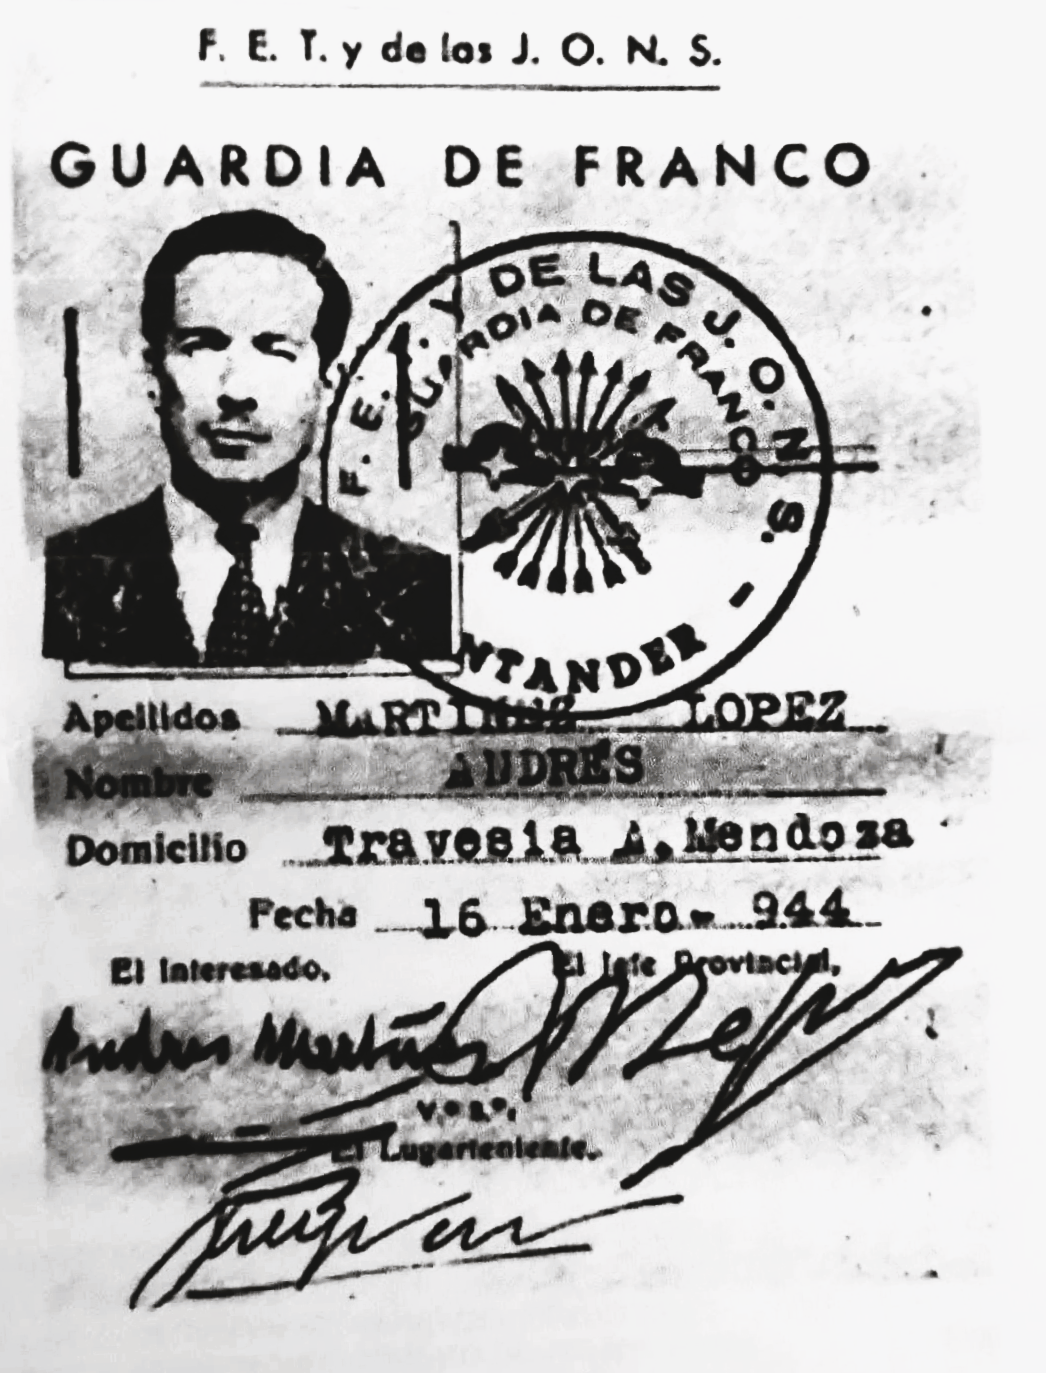 Carné de la Guardia de Franco con identidad falsa utilizado por Spitzy. En Irujo, J. M. (2003), La lista negra. Los espías nazis protegidos por Franco y la Iglesia. Aguilar